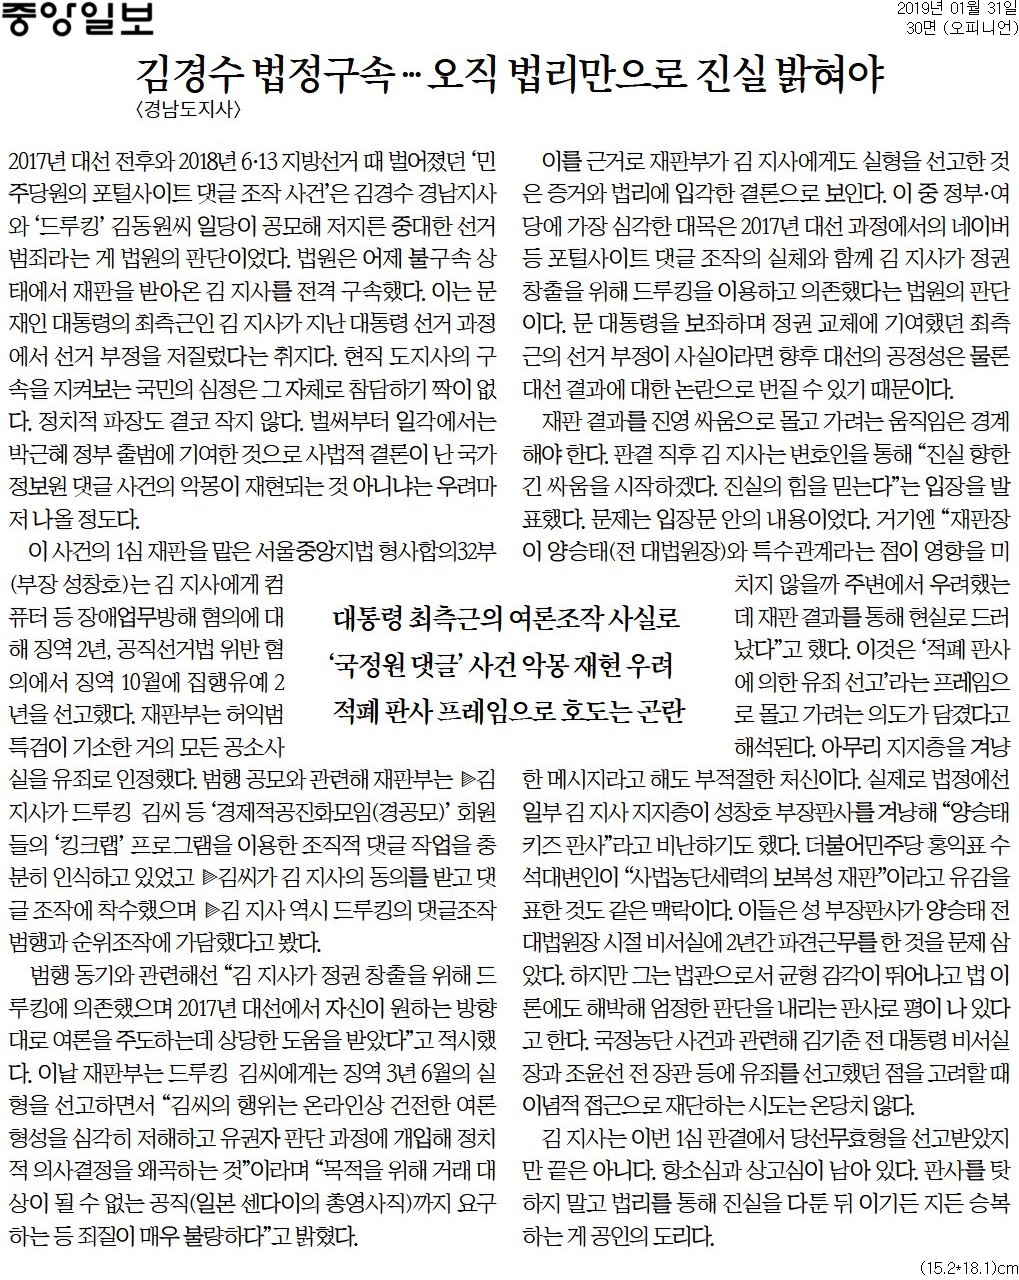 ▲ 31일 중앙일보 사설.